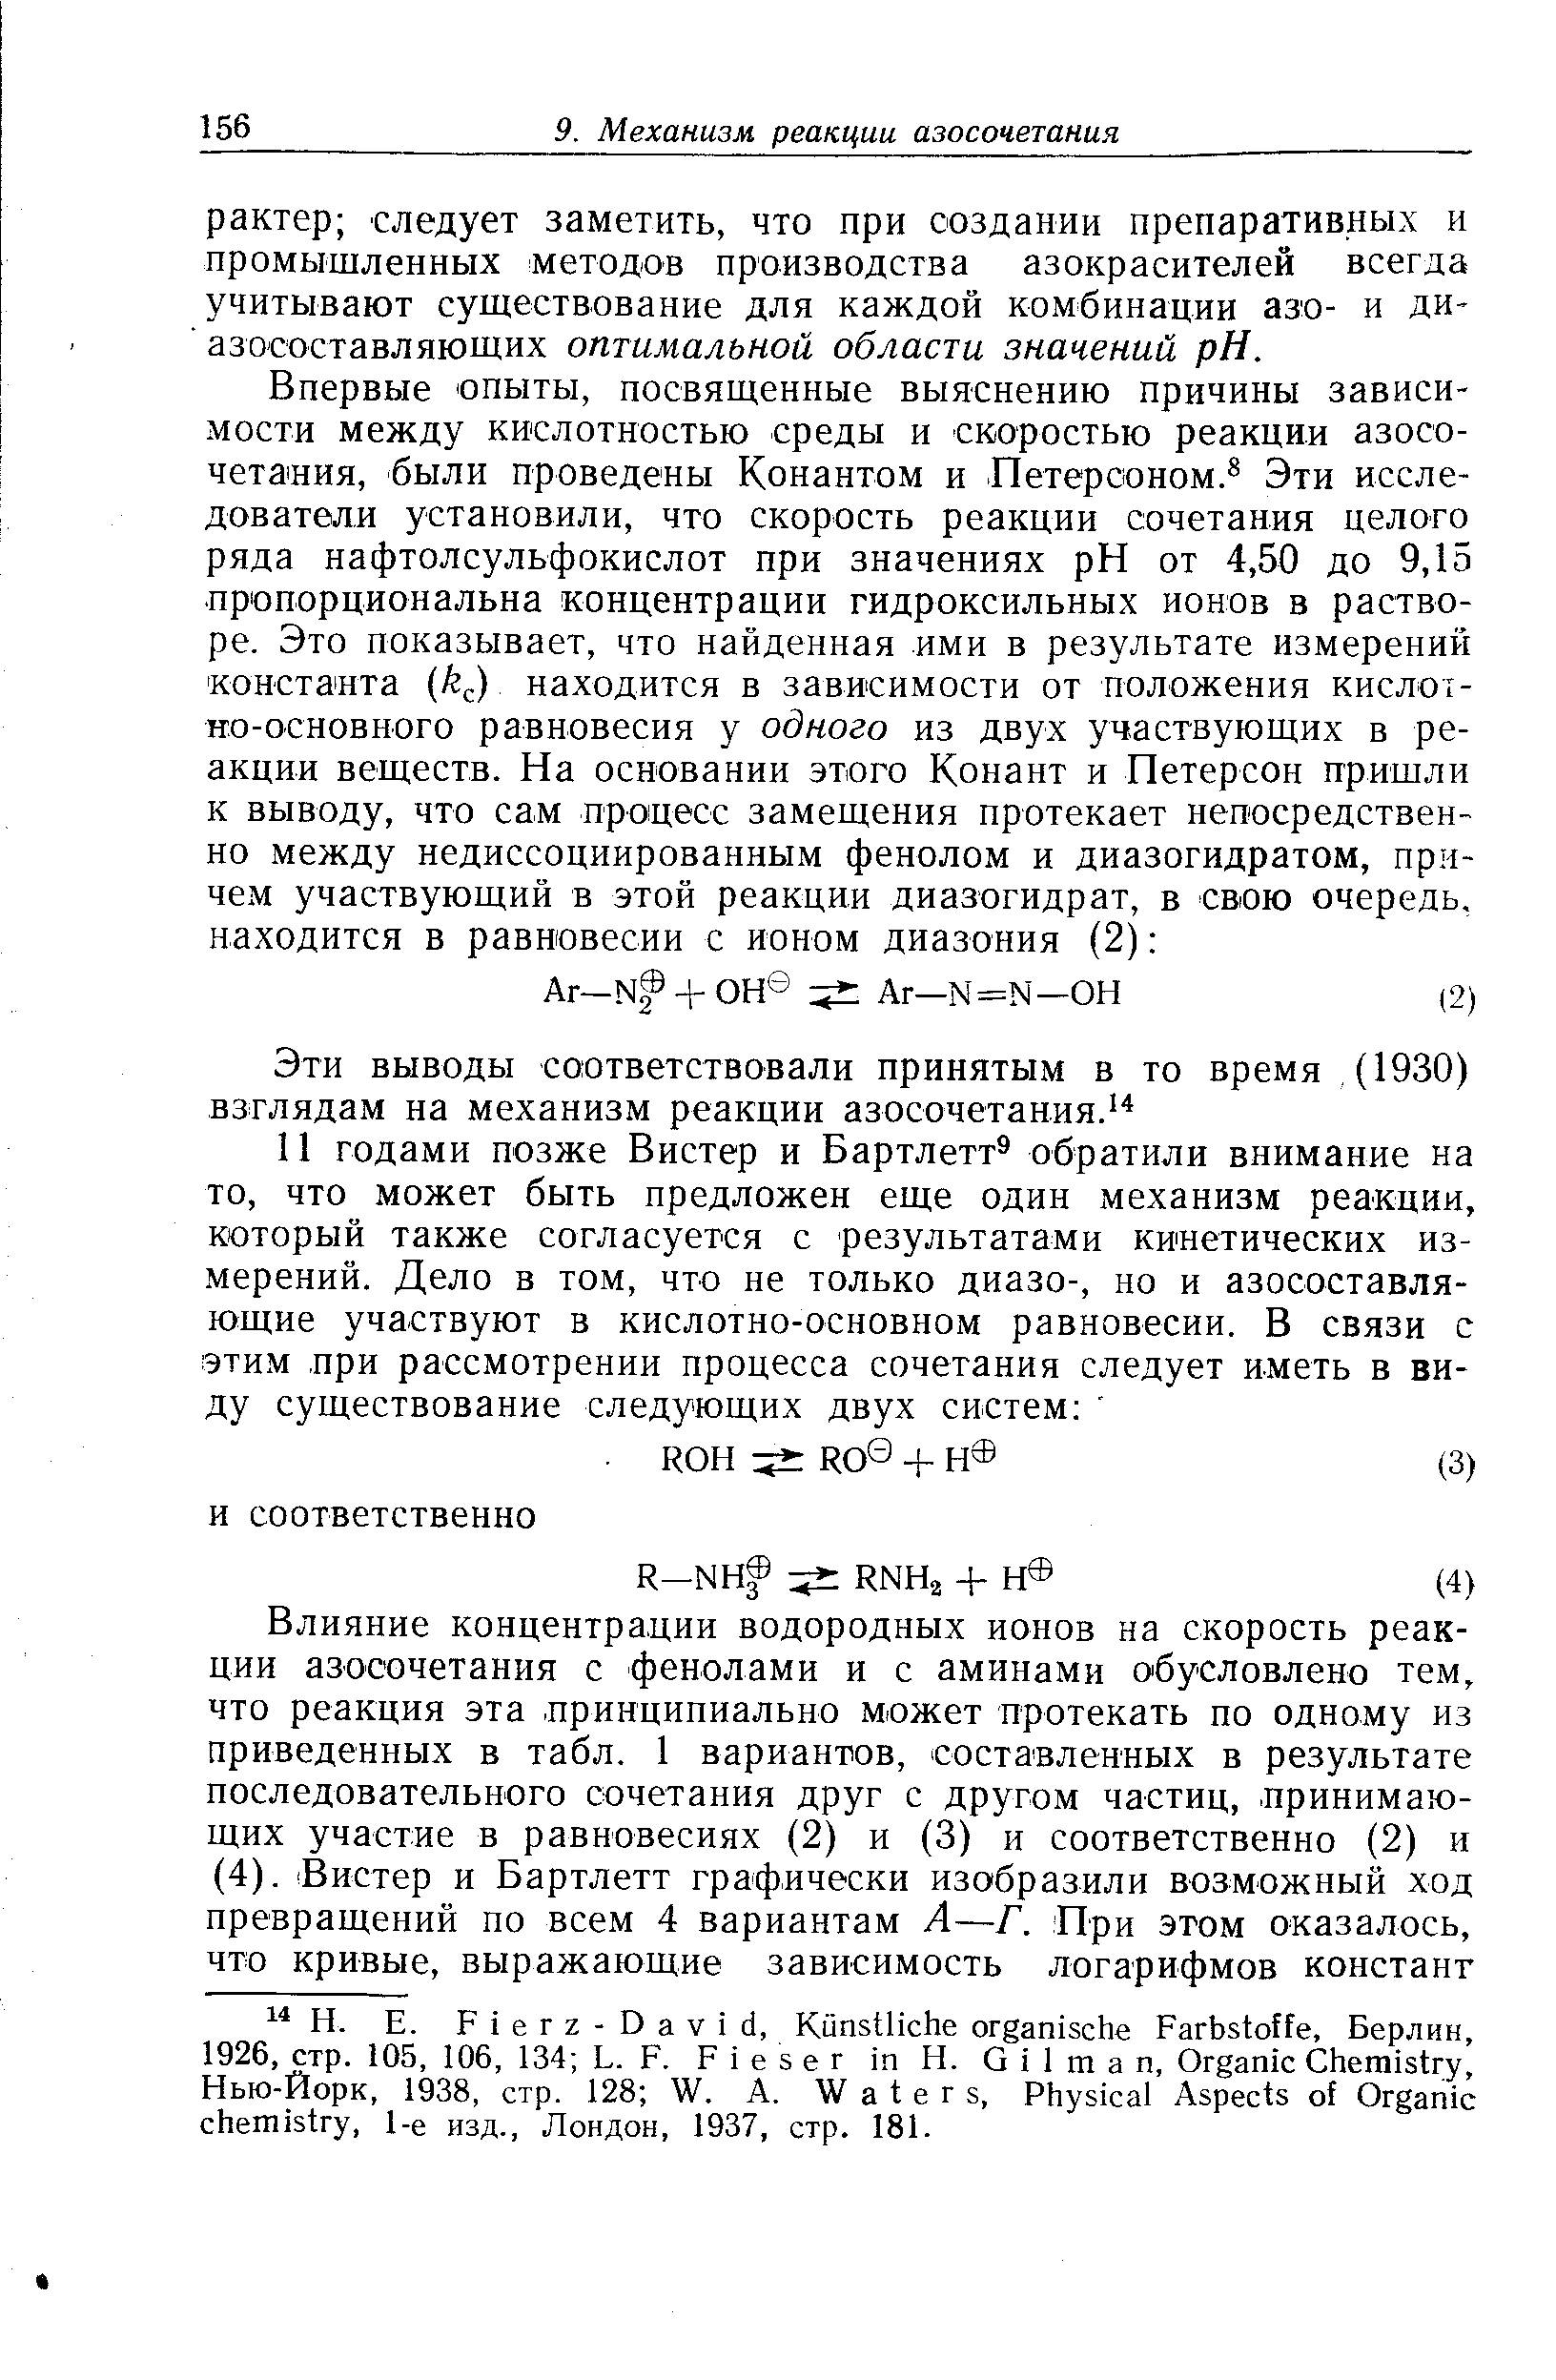 Эти выводы соответствовали принятым в то время (1930) взглядам на механизм реакции азосочетания.